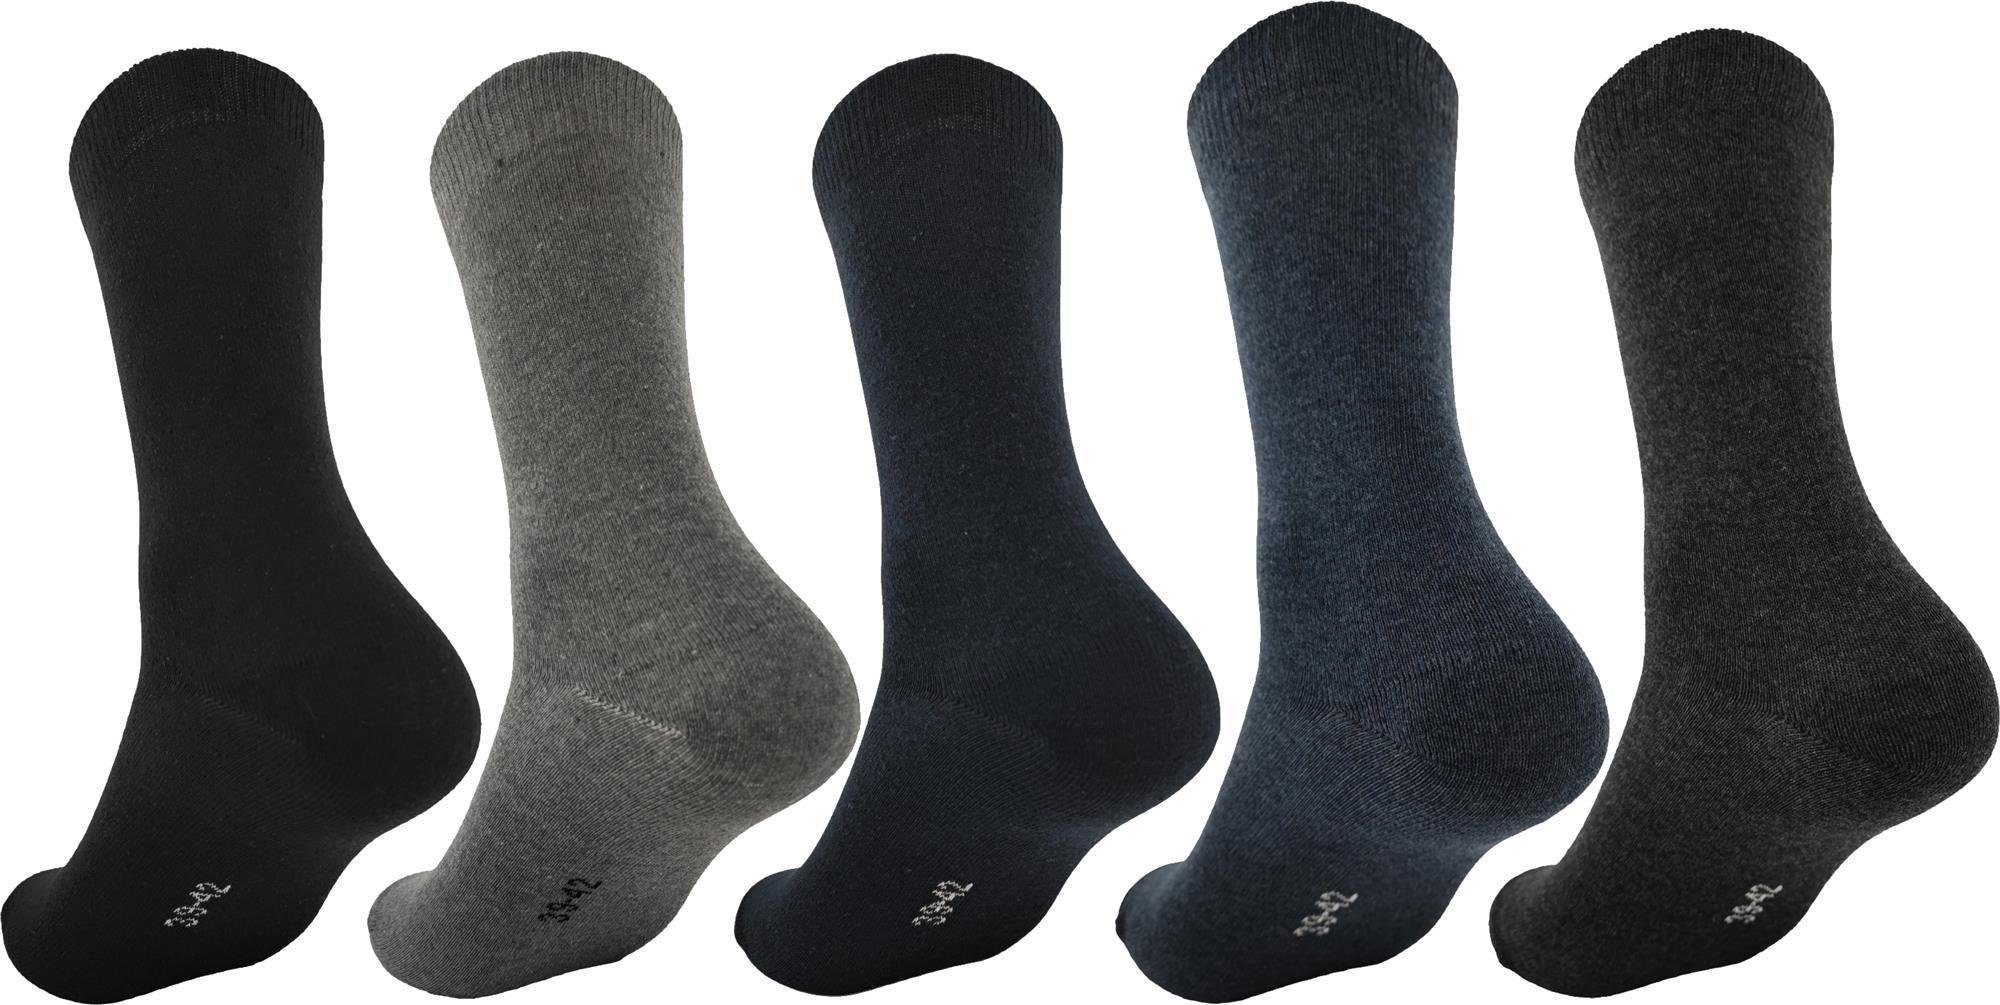 EloModa Basicsocken 5 Paar Herren Socken Freizeit Anzug Business in klassischer Form; (5-Paar) Gemischt, grafit, schwarz, grau